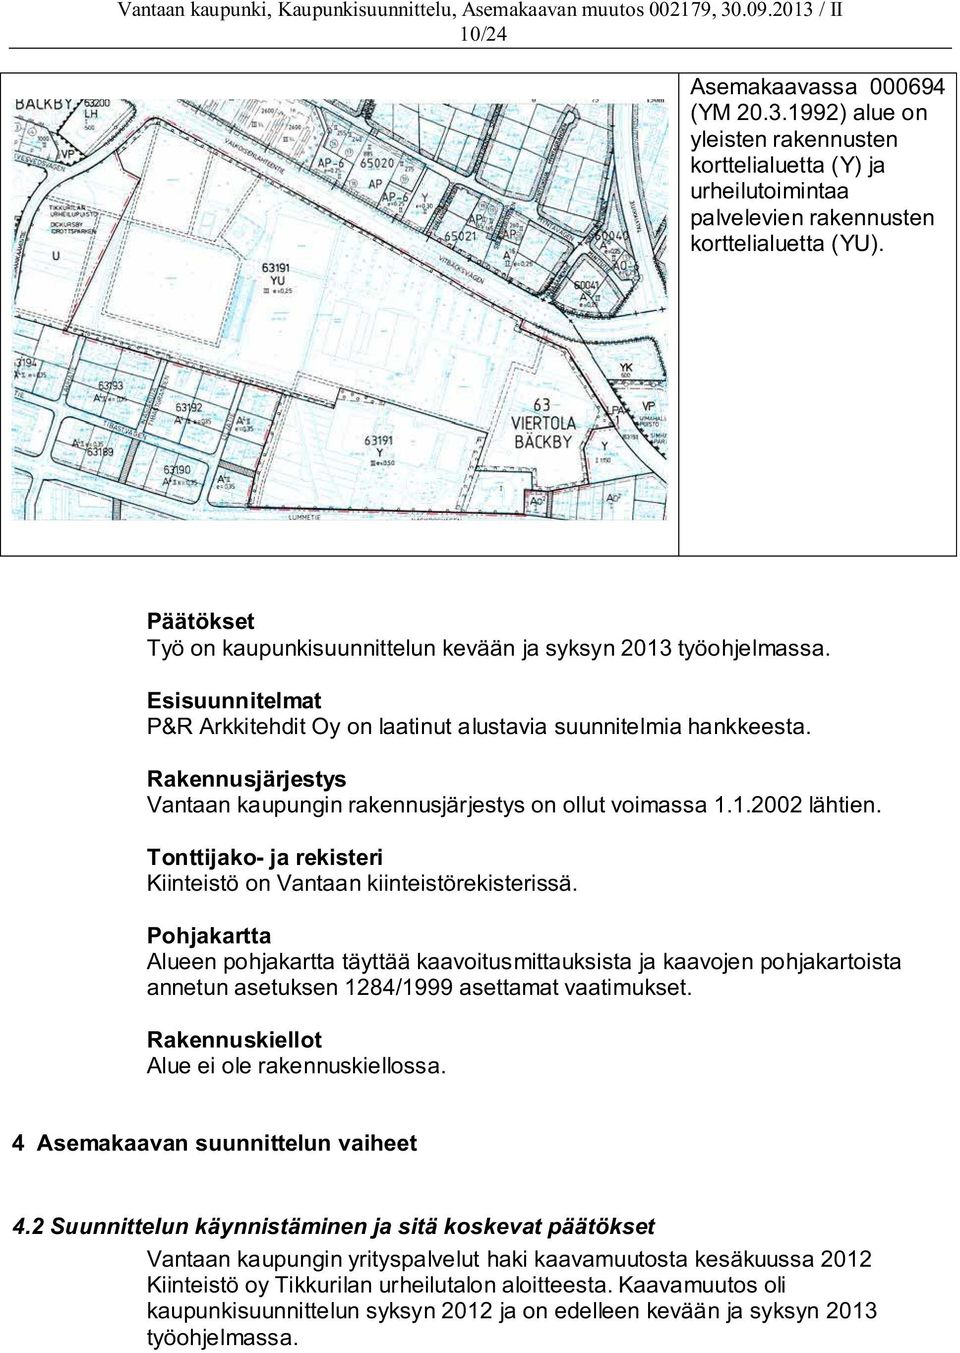 Rakennusjärjestys Vantaan kaupungin rakennusjärjestys on ollut voimassa 1.1.2002 lähtien. Tonttijako- ja rekisteri Kiinteistö on Vantaan kiinteistörekisterissä.